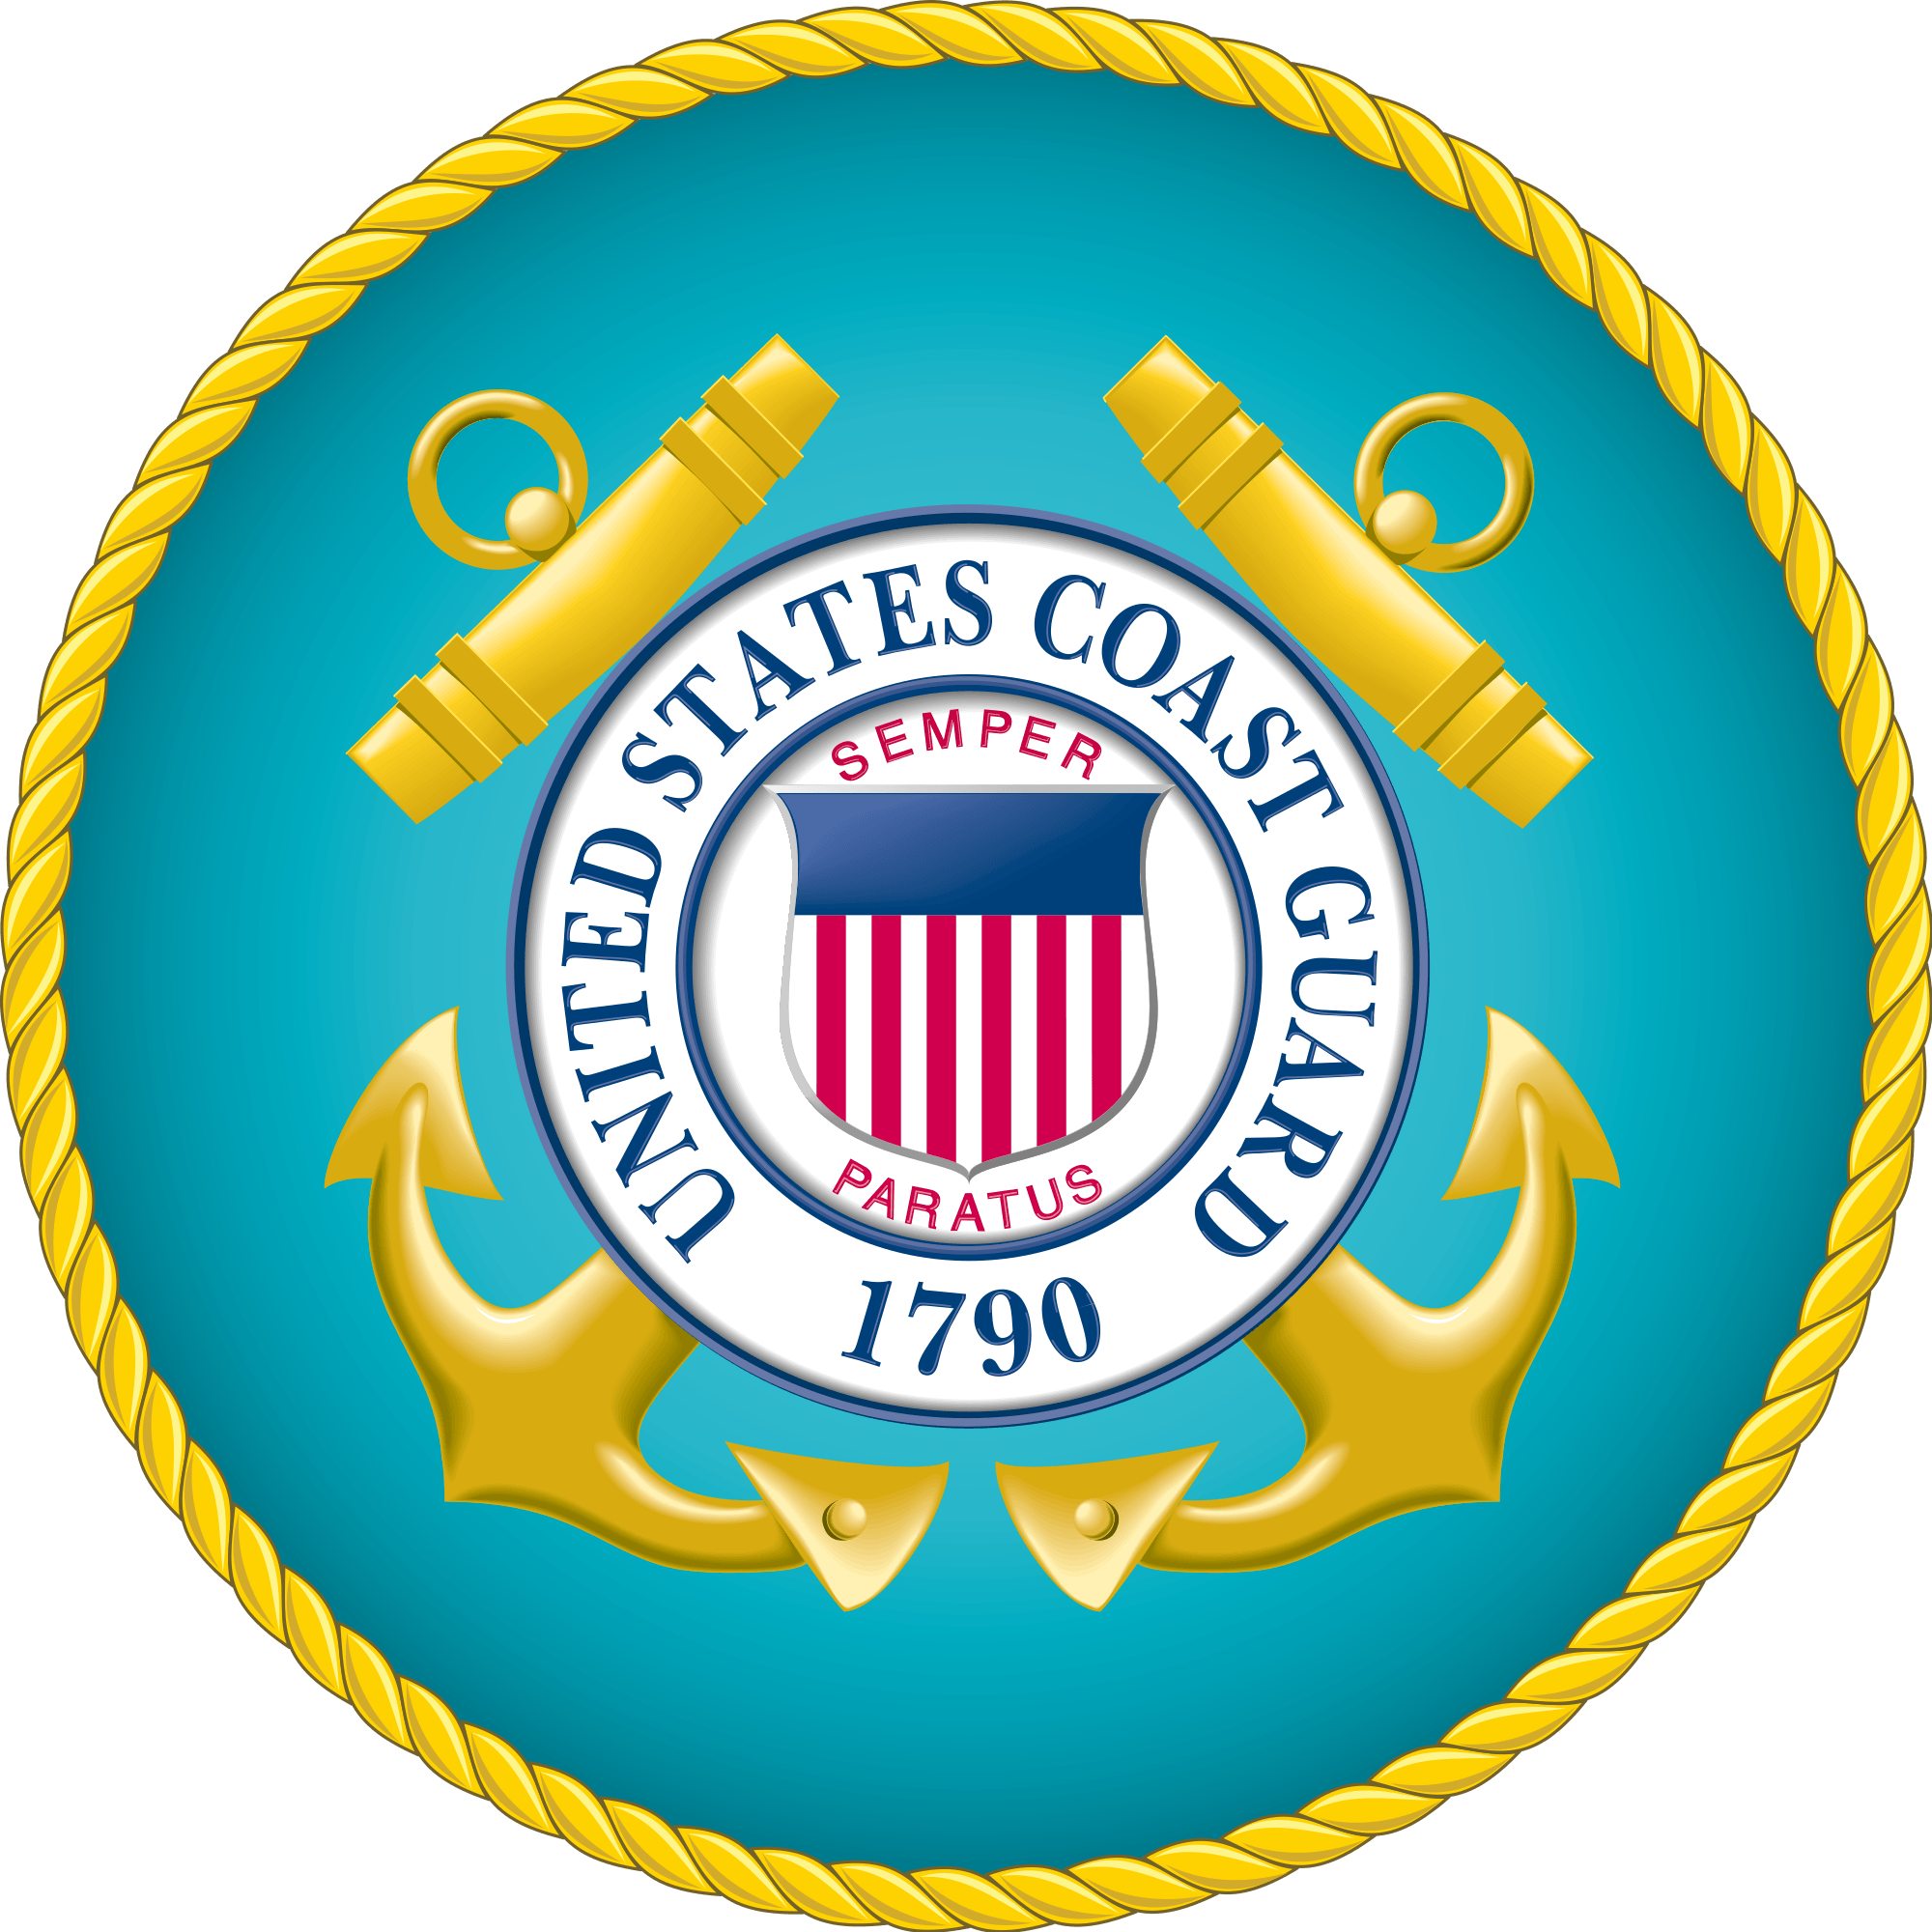 Us Coast Guard Logo - File:Seal of the United States Coast Guard.svg - Wikimedia Commons